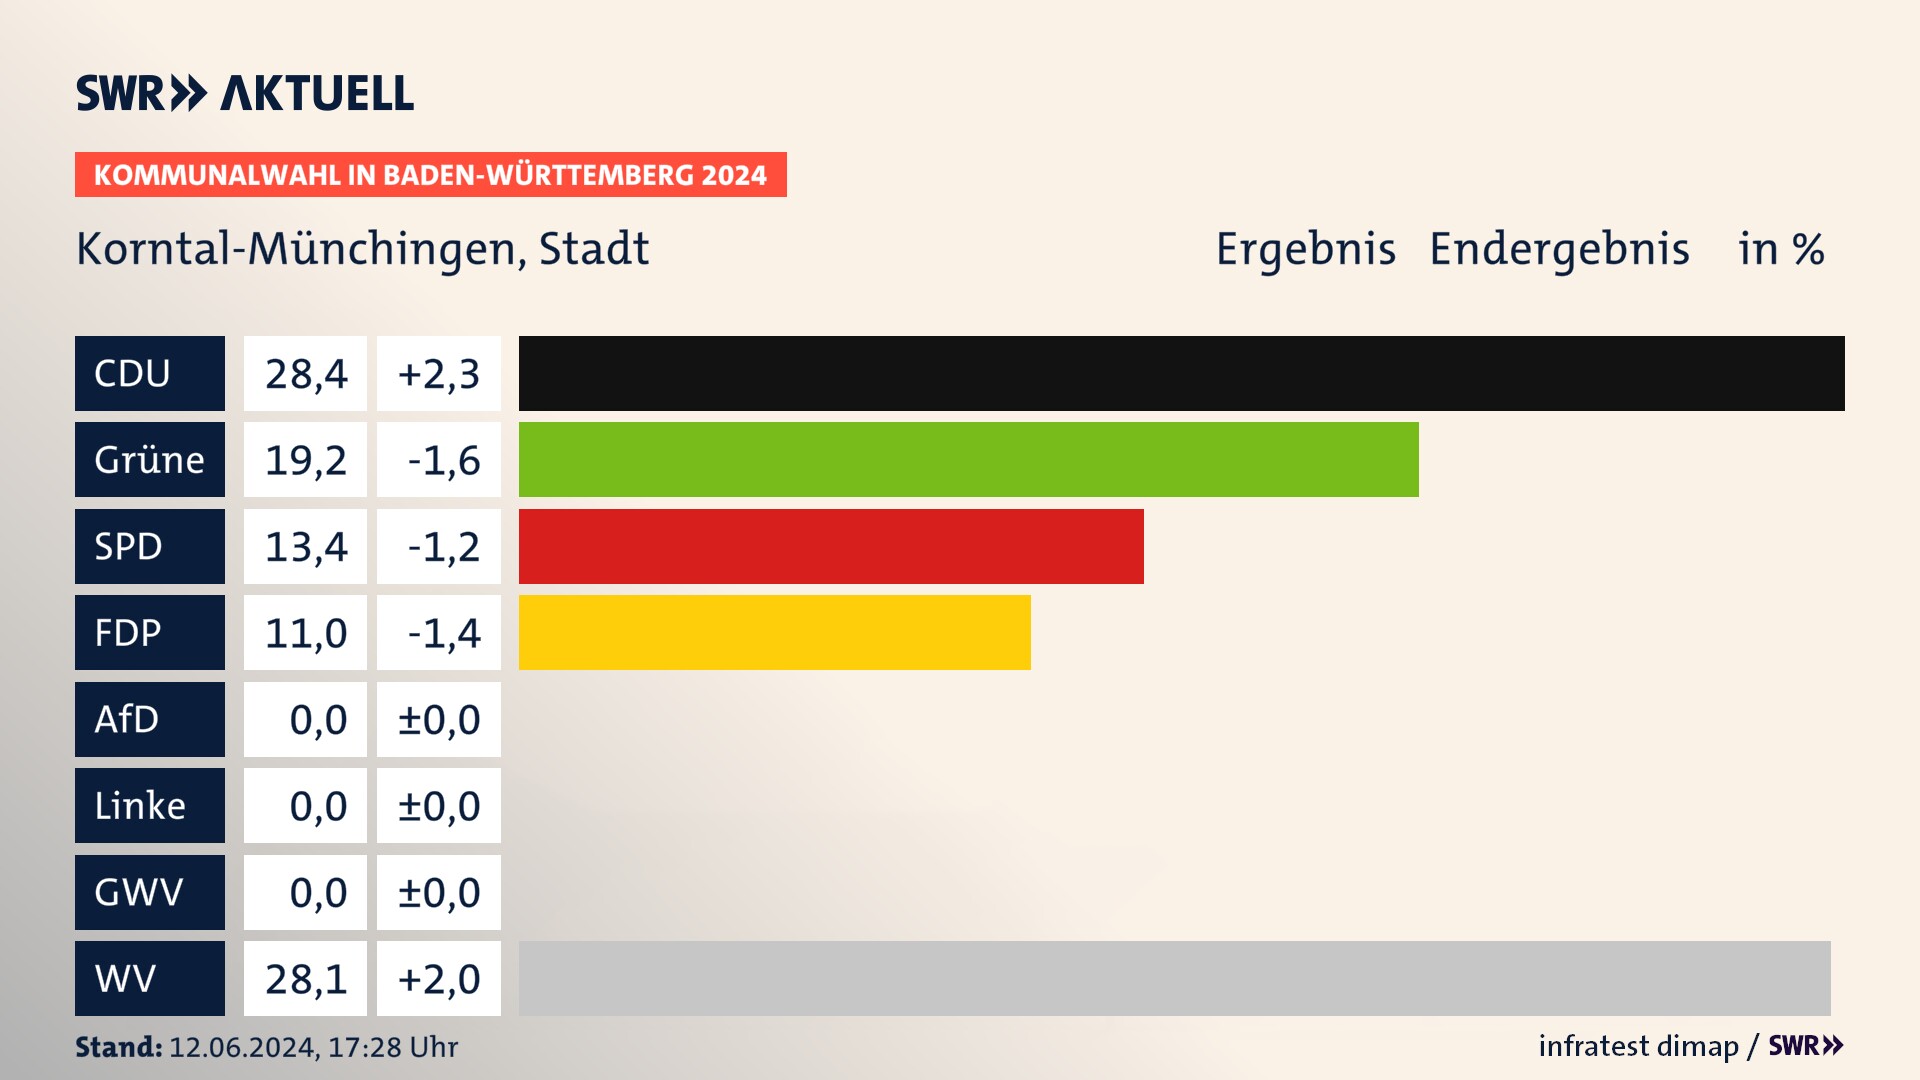 Kommunalwahl 2024 Endergebnis Zweitstimme für Korntal-Münchingen. In Korntal-Münchingen, Stadt erzielt die CDU 28,4 Prozent der gültigen  Stimmen. Die Grünen landen bei 19,2 Prozent. Die SPD erreicht 13,4 Prozent. Die FDP kommt auf 11,0 Prozent. Die Wählervereinigungen landen bei 28,1 Prozent.